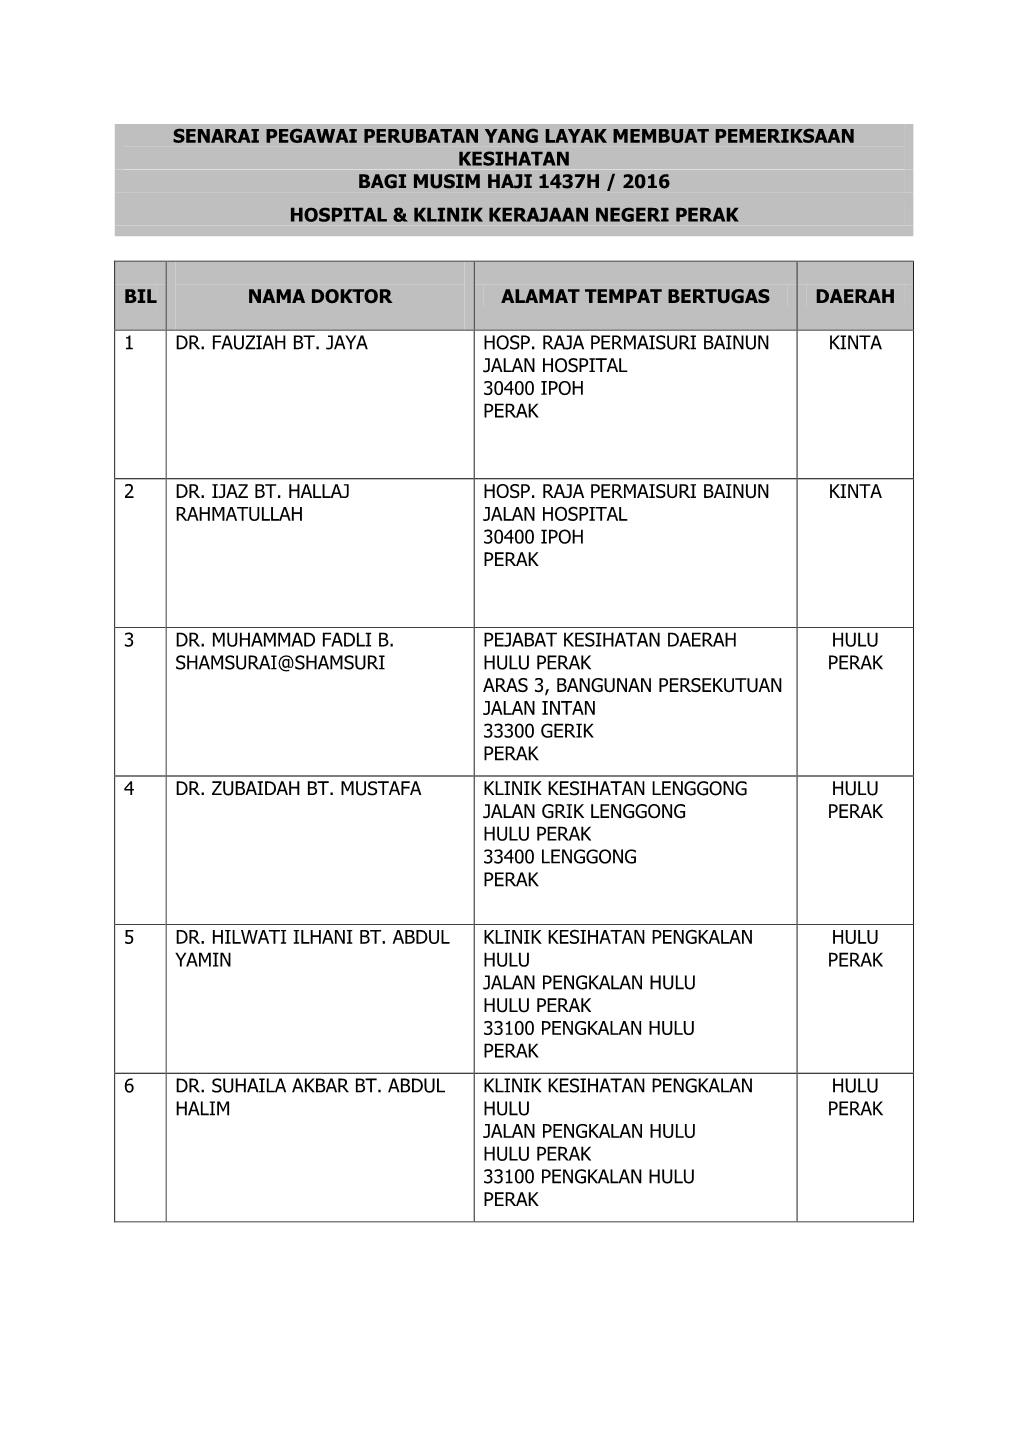 Senarai Pegawai Perubatan Yang Layak Membuat Pemeriksaan Kesihatan Bagi Musim Haji 1437H / 2016 Hospital & Klinik Kerajaan Negeri Perak